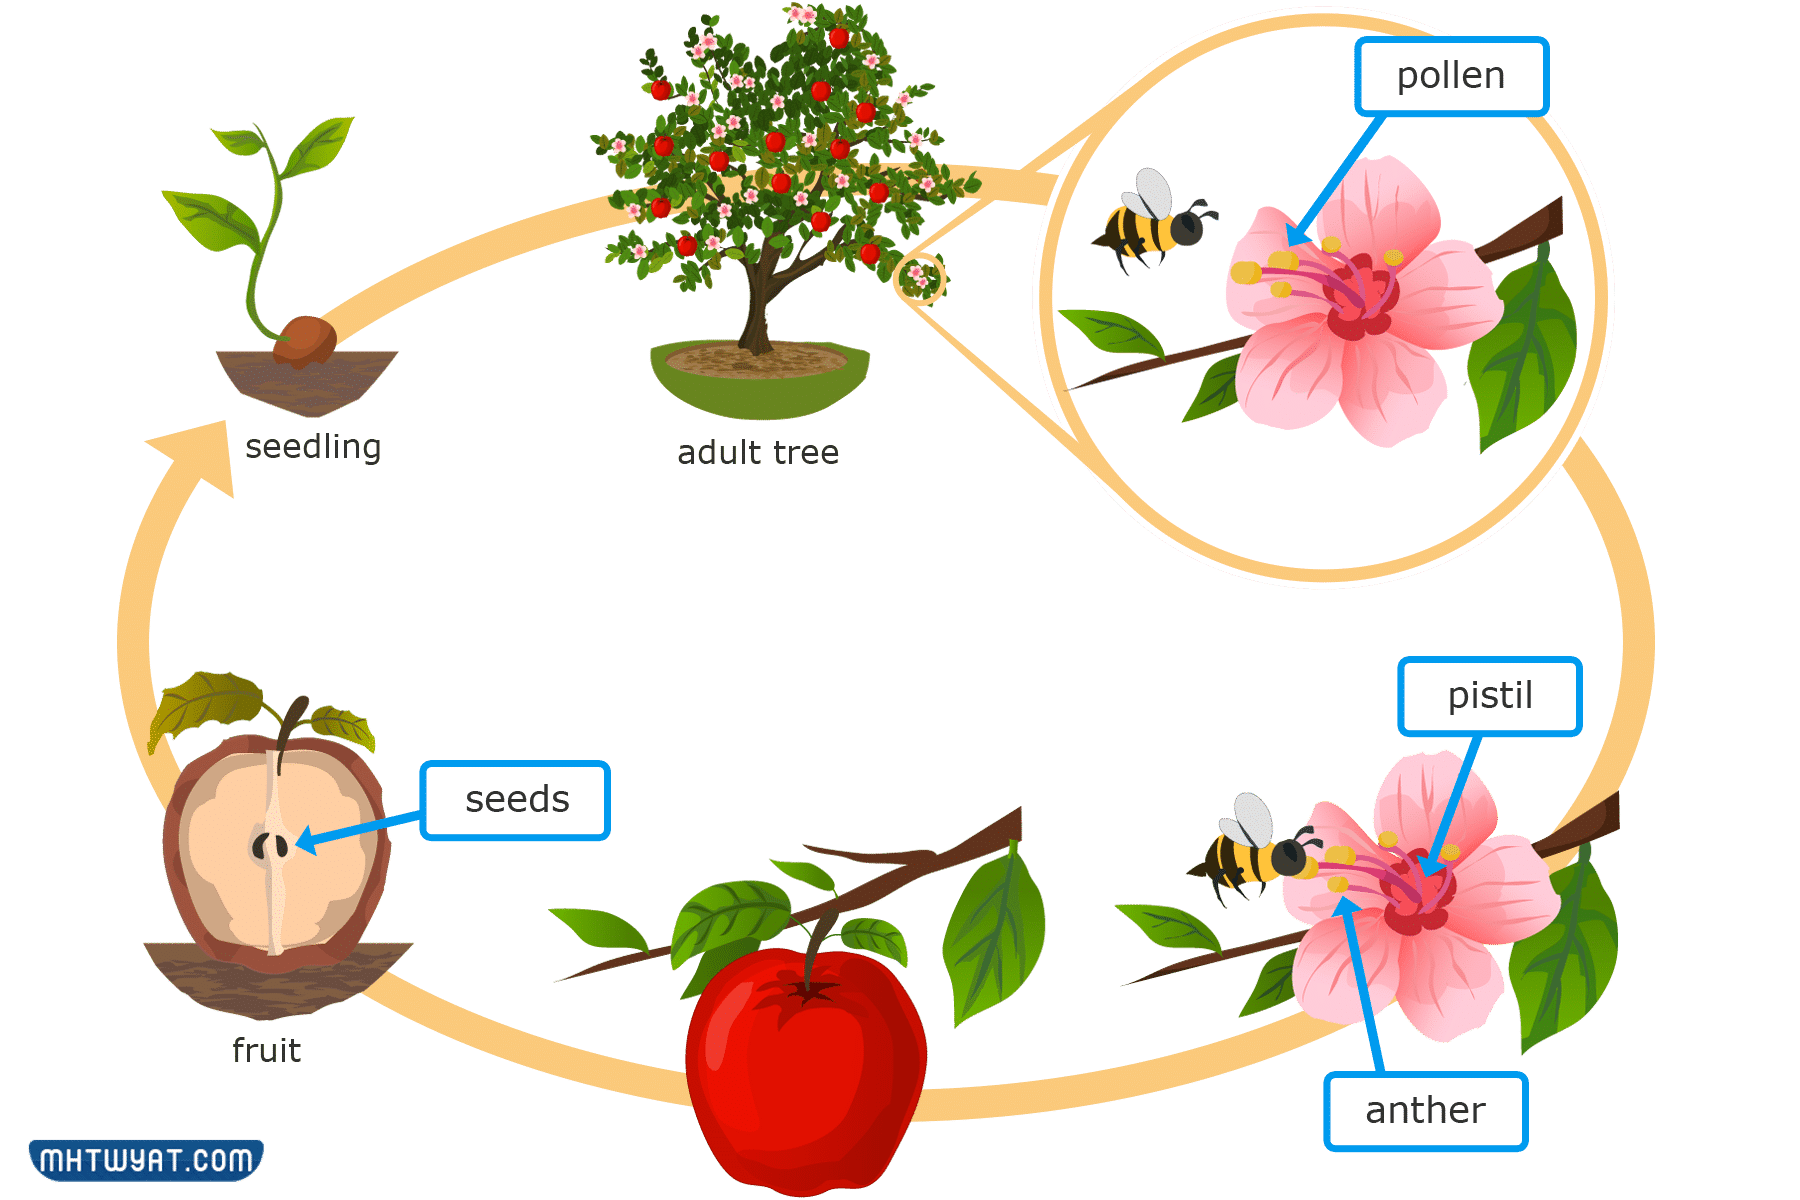  مطوية عن مراحل نمو النباتات 